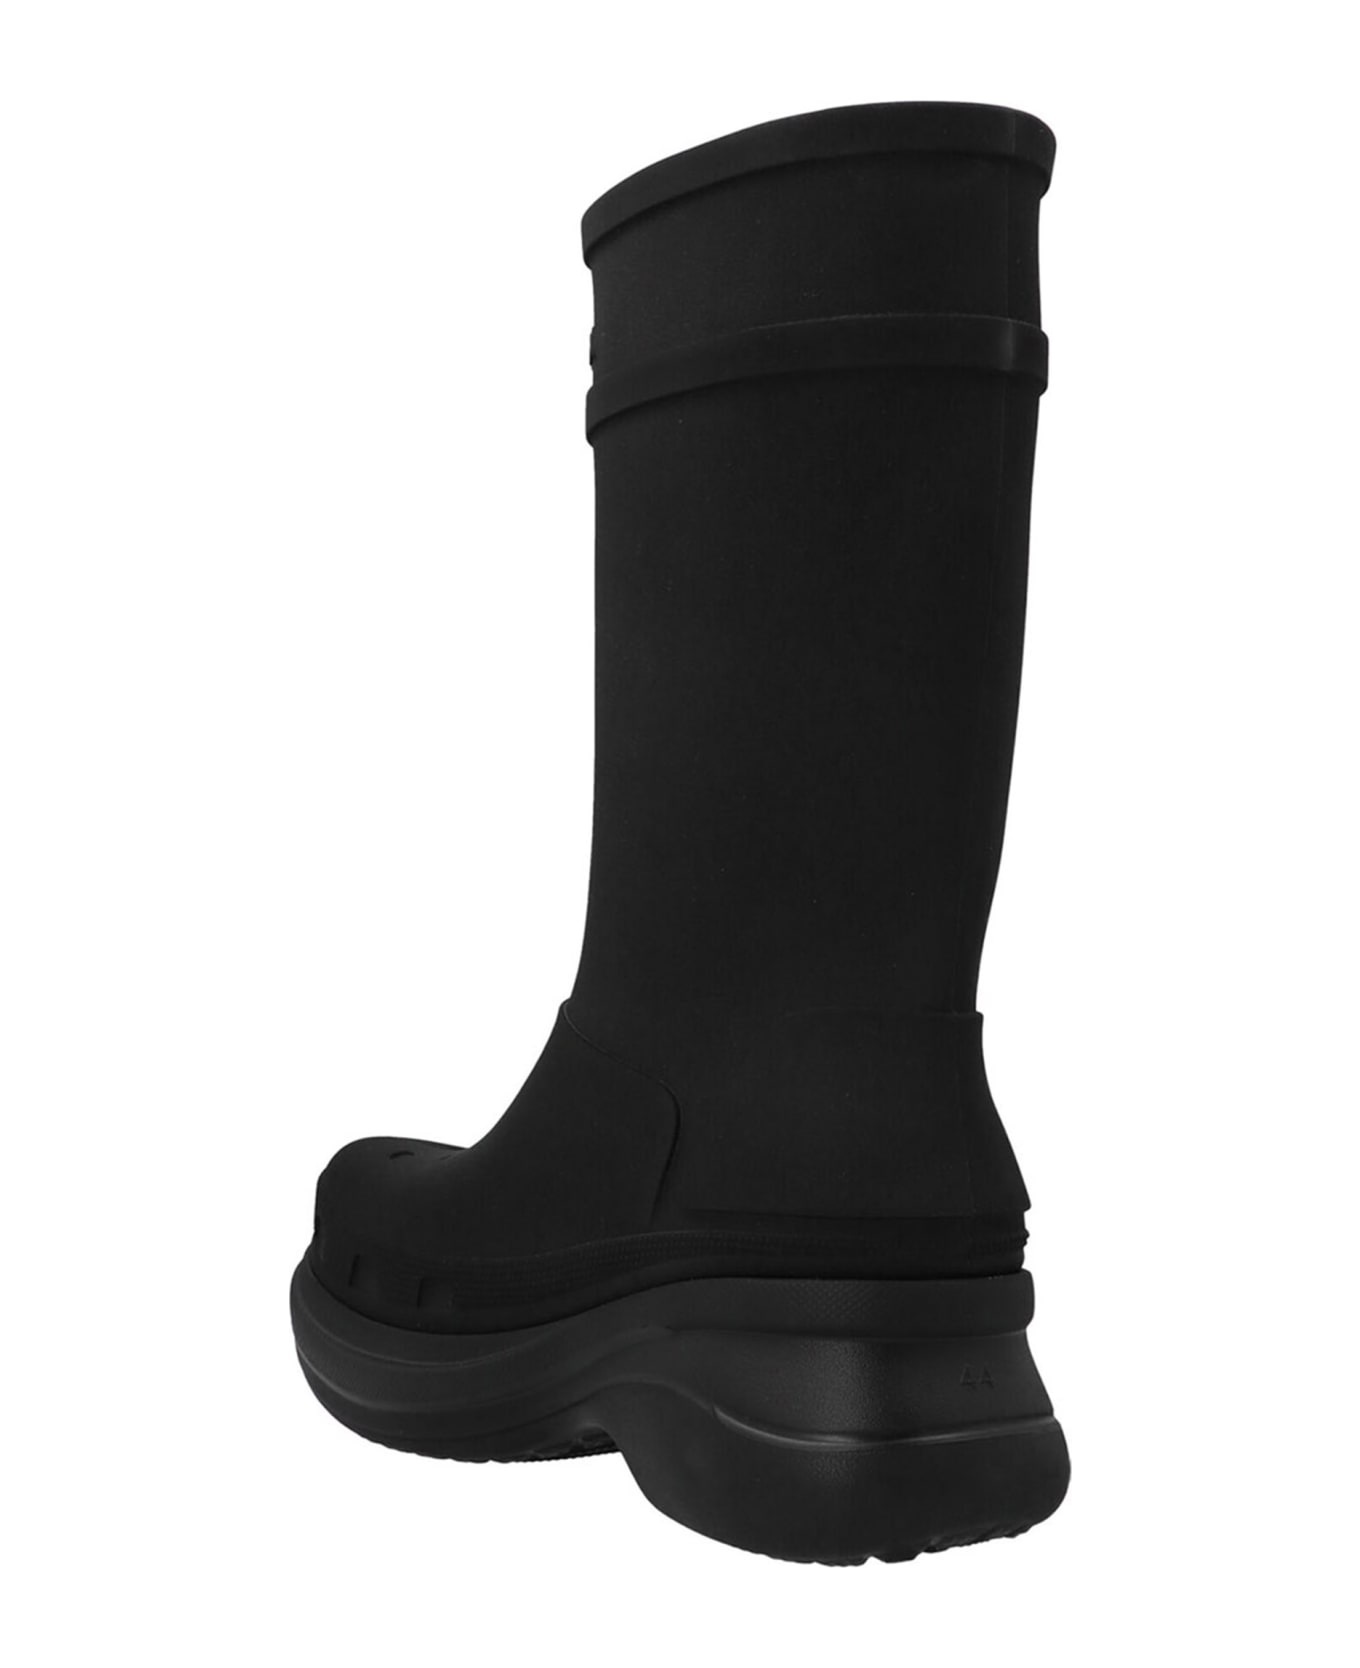 Balenciaga X Crocs Boots - 3